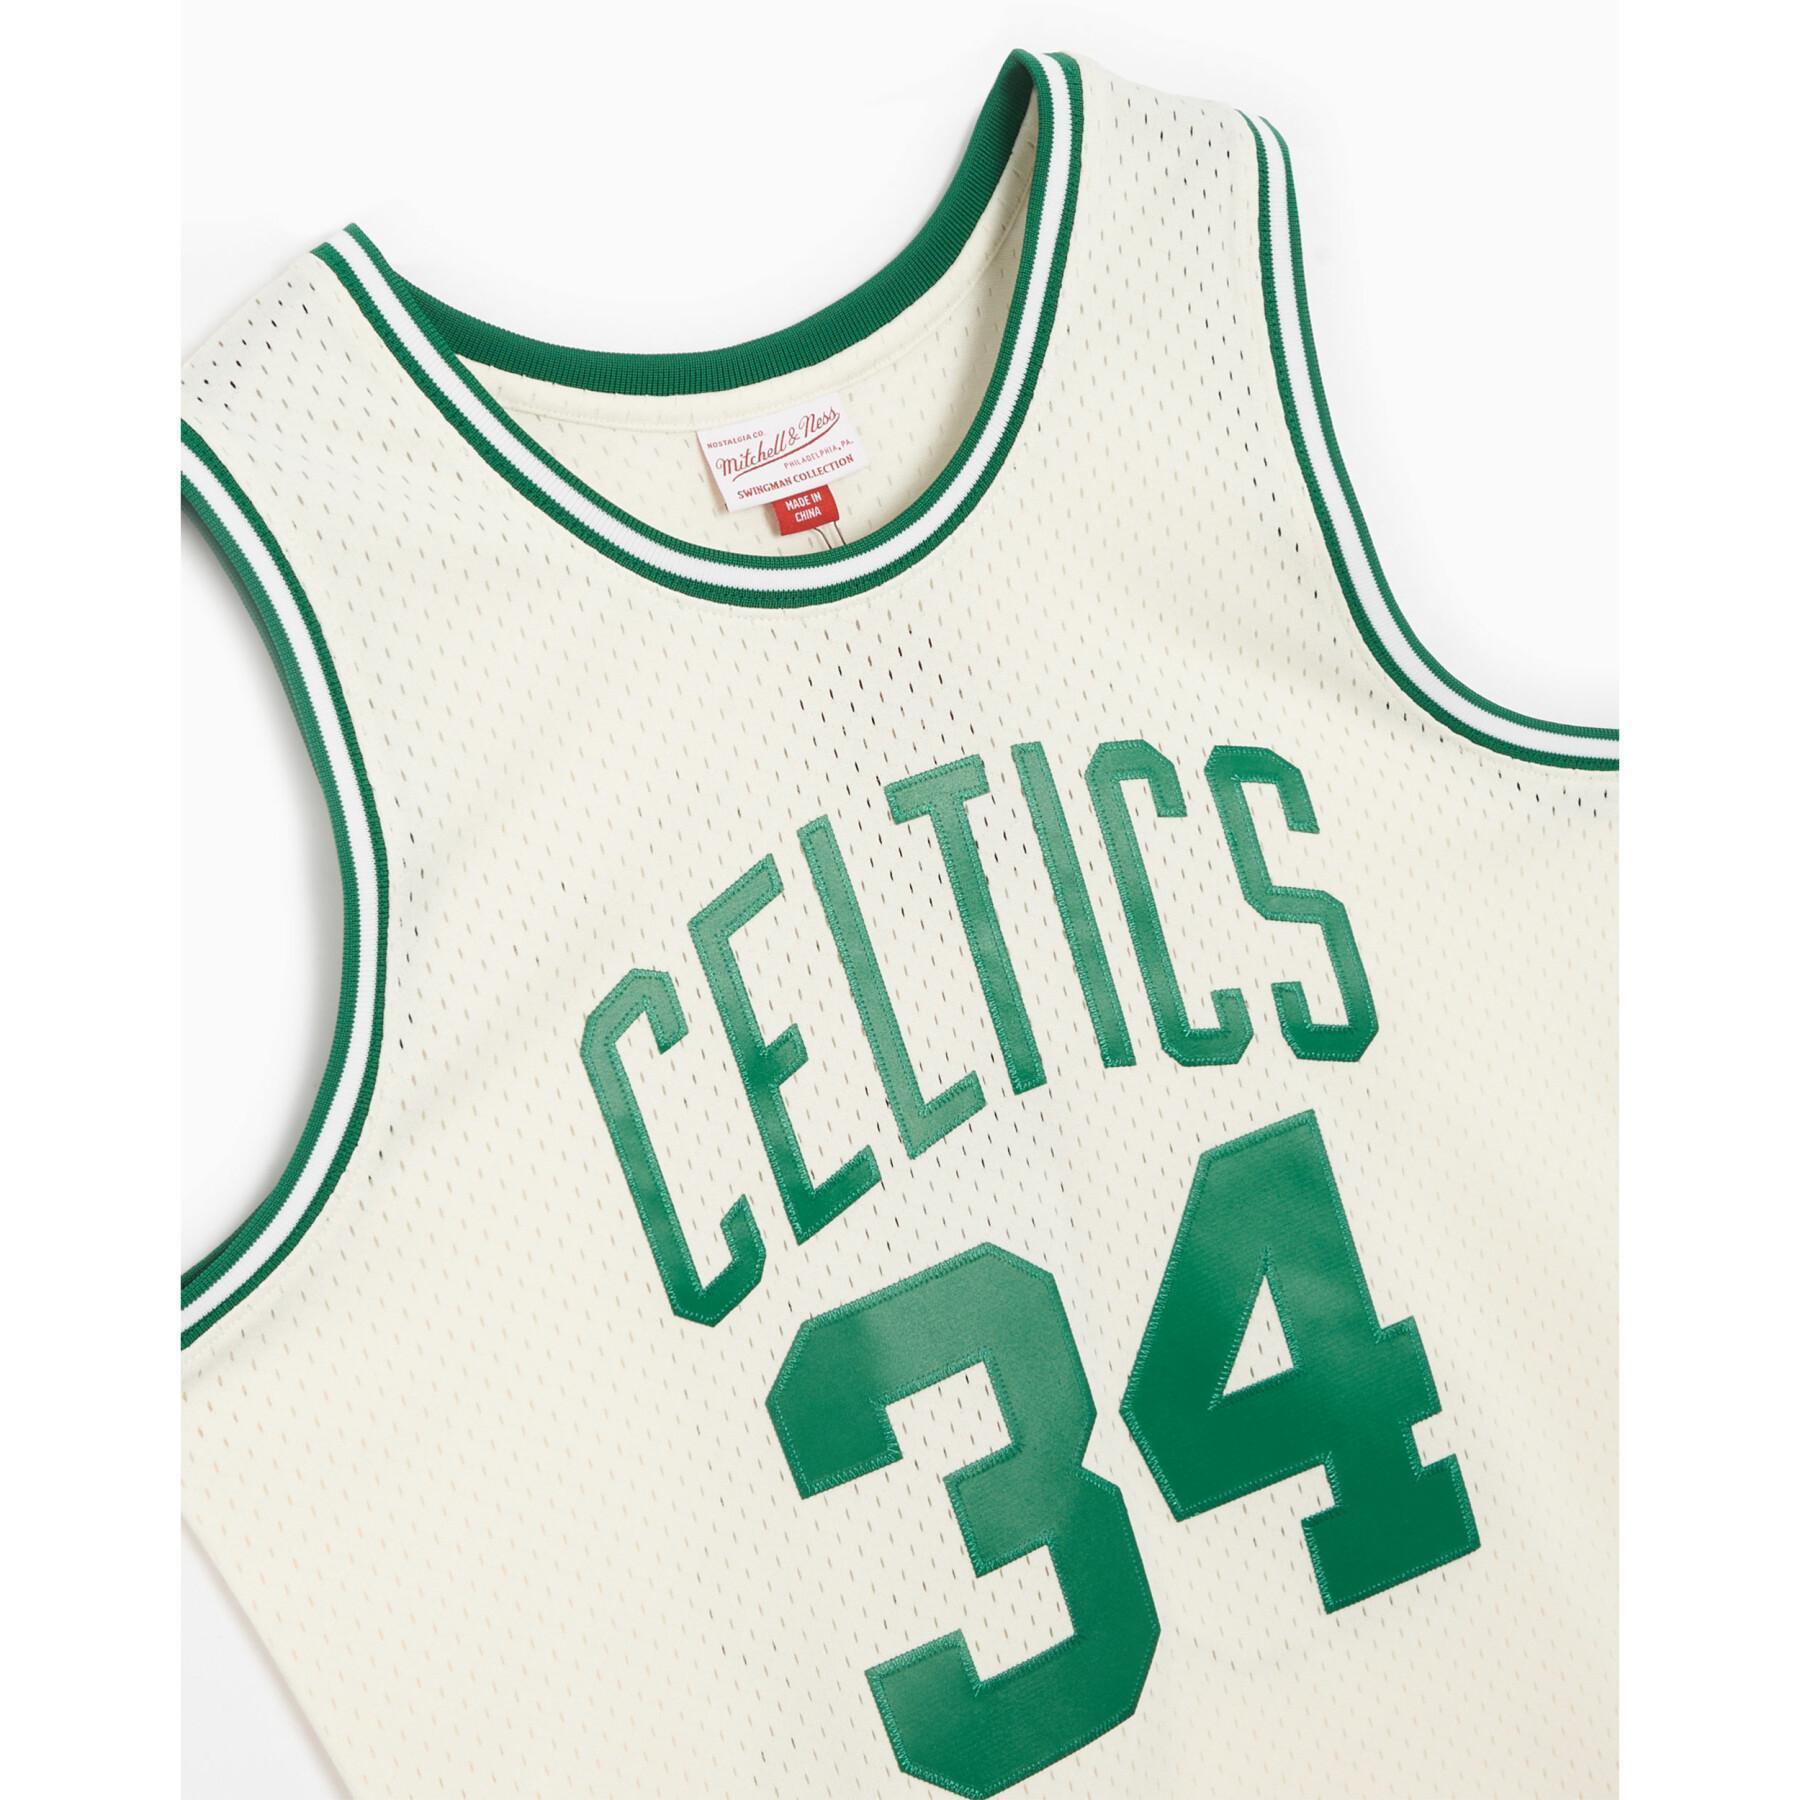 CamisetaBoston Celtics Paul Pierce NBA 2007